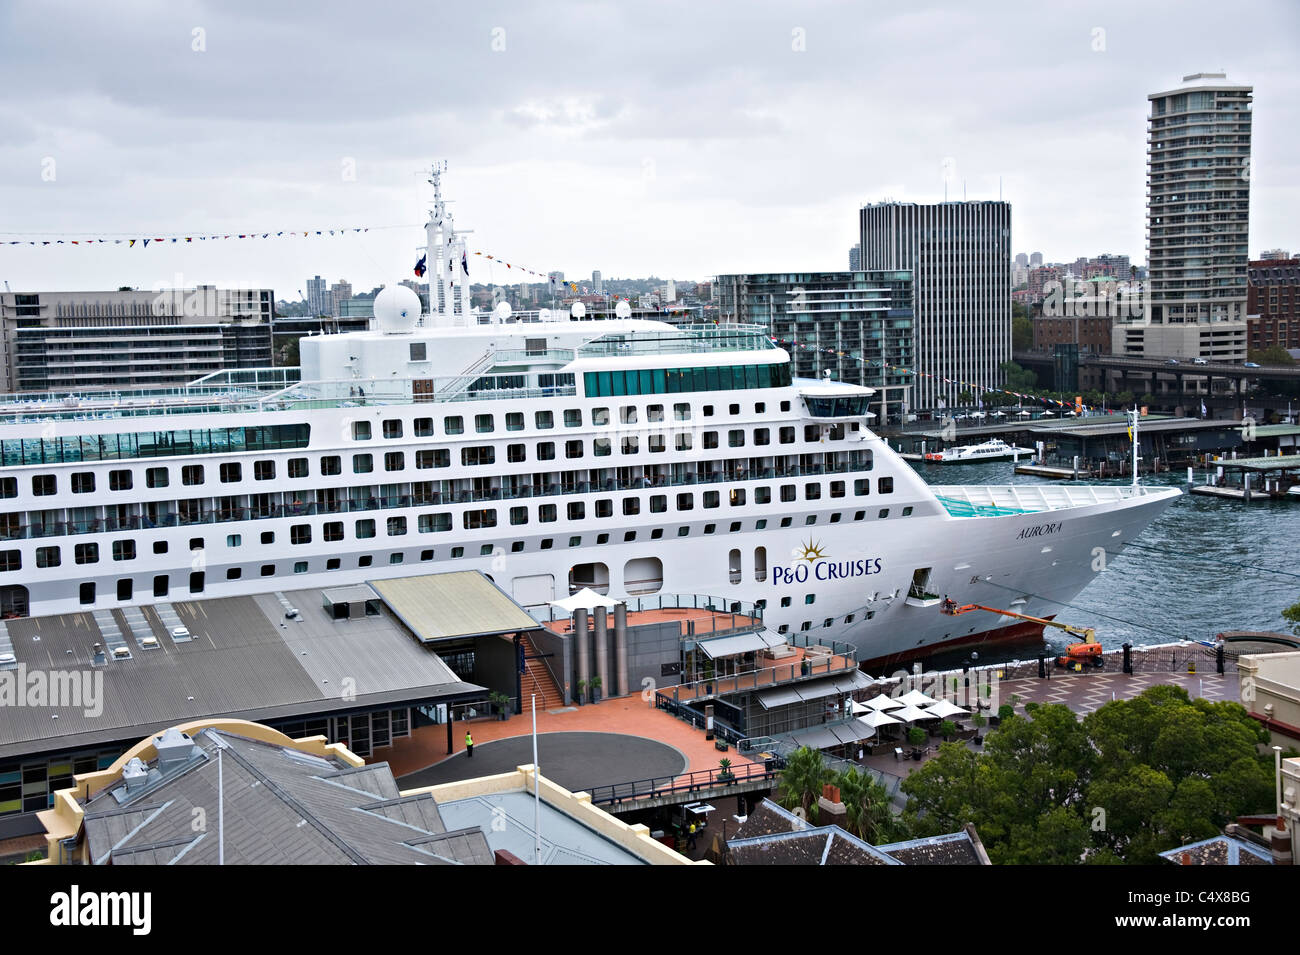 Le P&O Cruise Ship Aurora accosté au terminal passagers d'outre-mer dans le port de Sydney NSW Australie Nouvelle Galles du Sud Banque D'Images